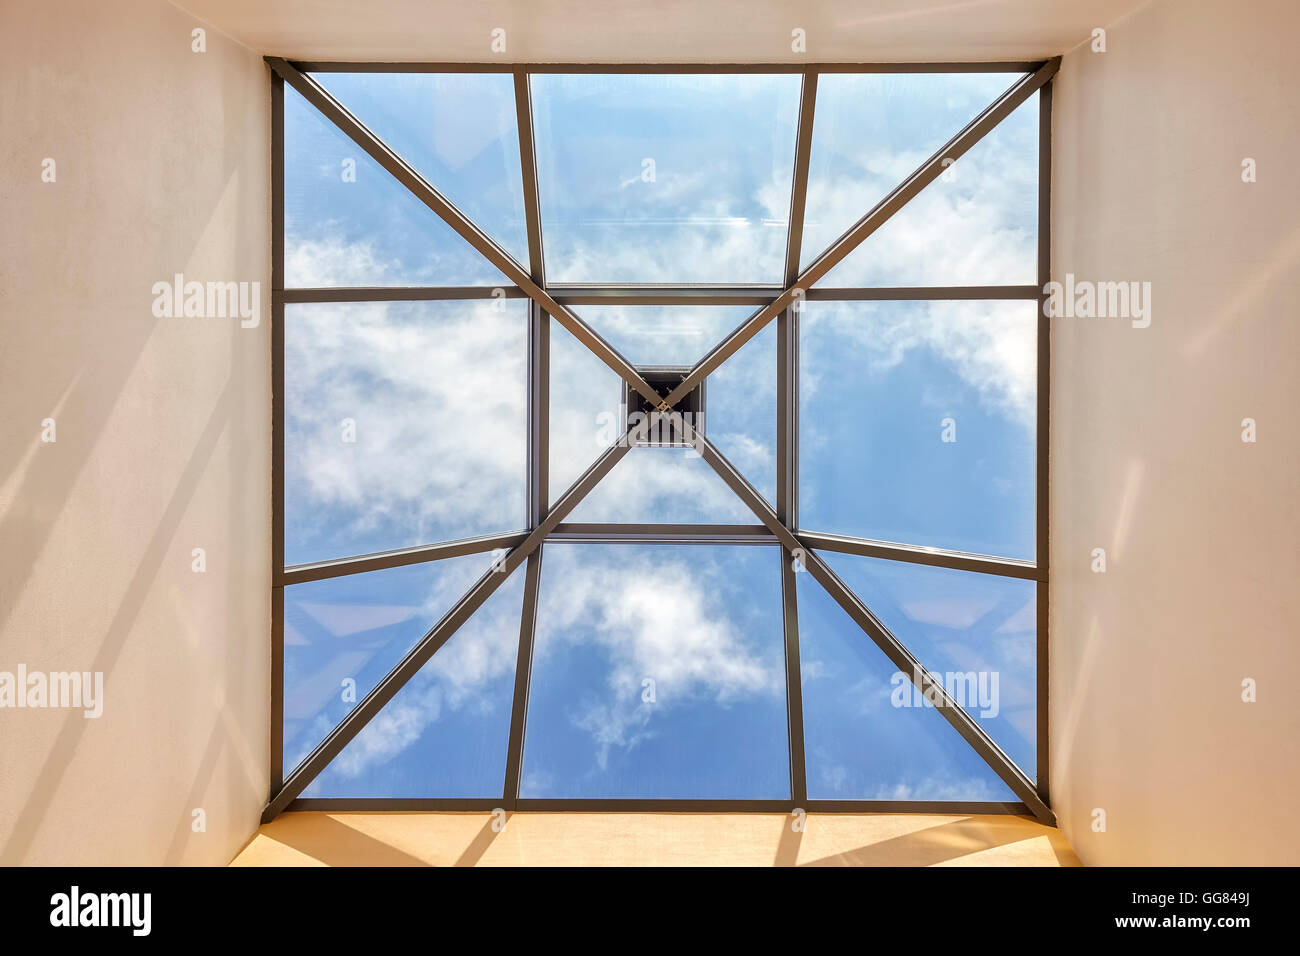 Ventana en el techo con cielo azul y nubes, imagen conceptual. Foto de stock